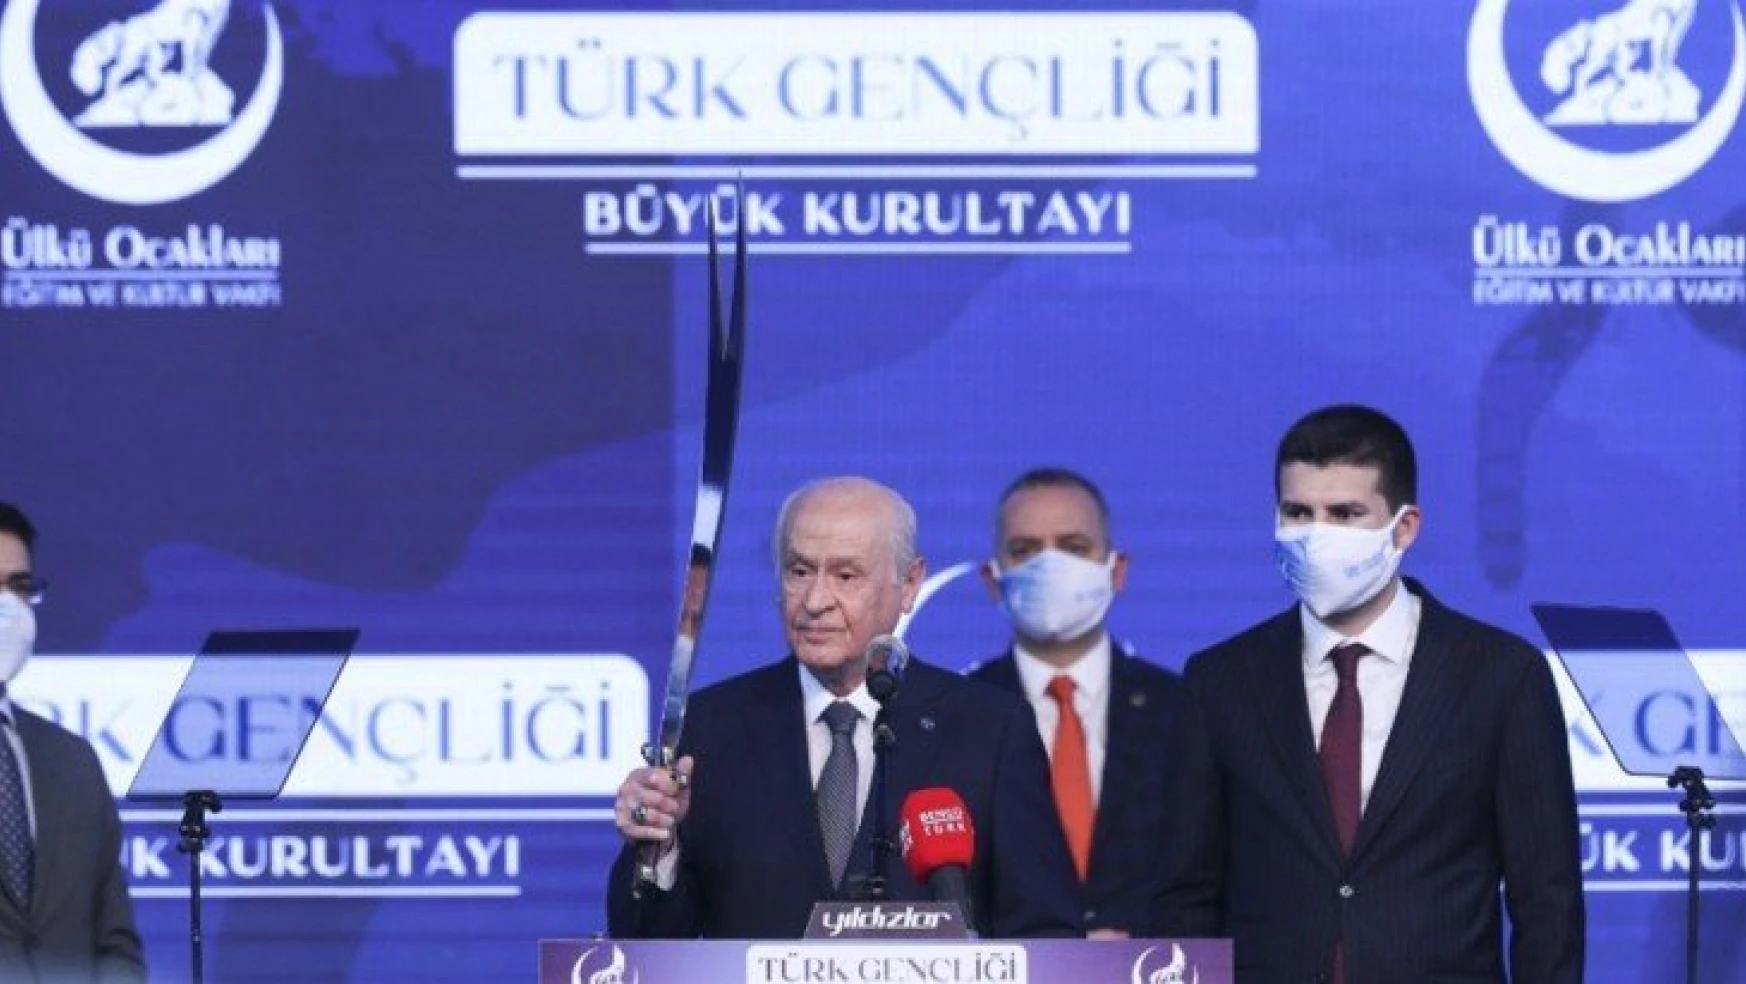 MHP Lideri Bahçeli: 'Ülkü ocaklarından terörist değil, terörizmin can düşmanı çıkar.'